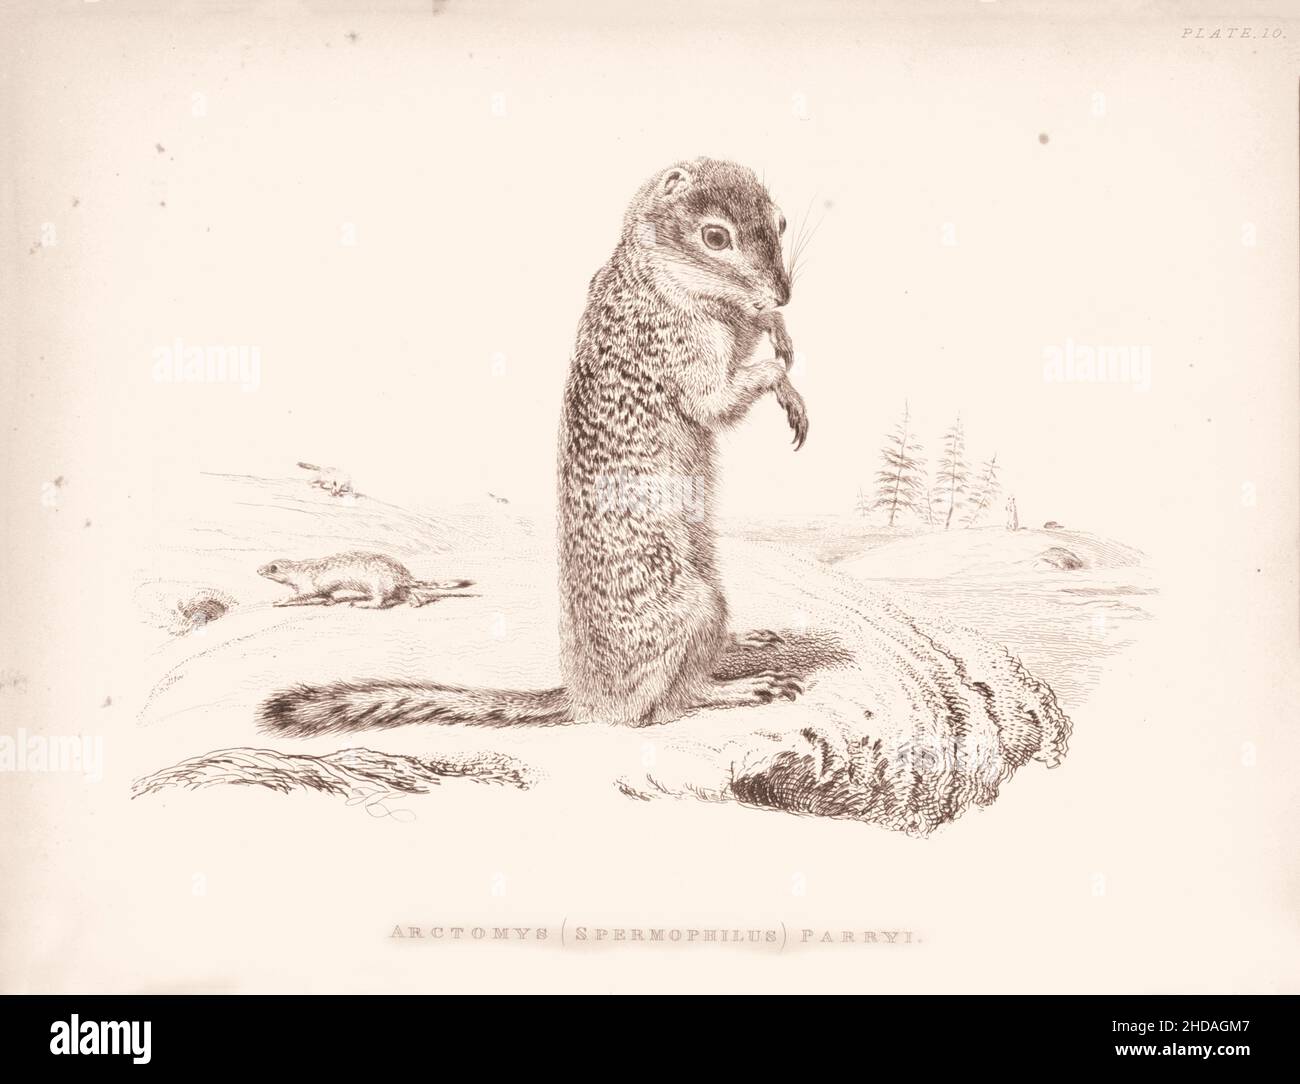 Gravure vintage (dessin) du Marmot de Parry.Arctomys (Spermophilus) parryi.1829-1837, par J. Murray (Éditeur) Banque D'Images